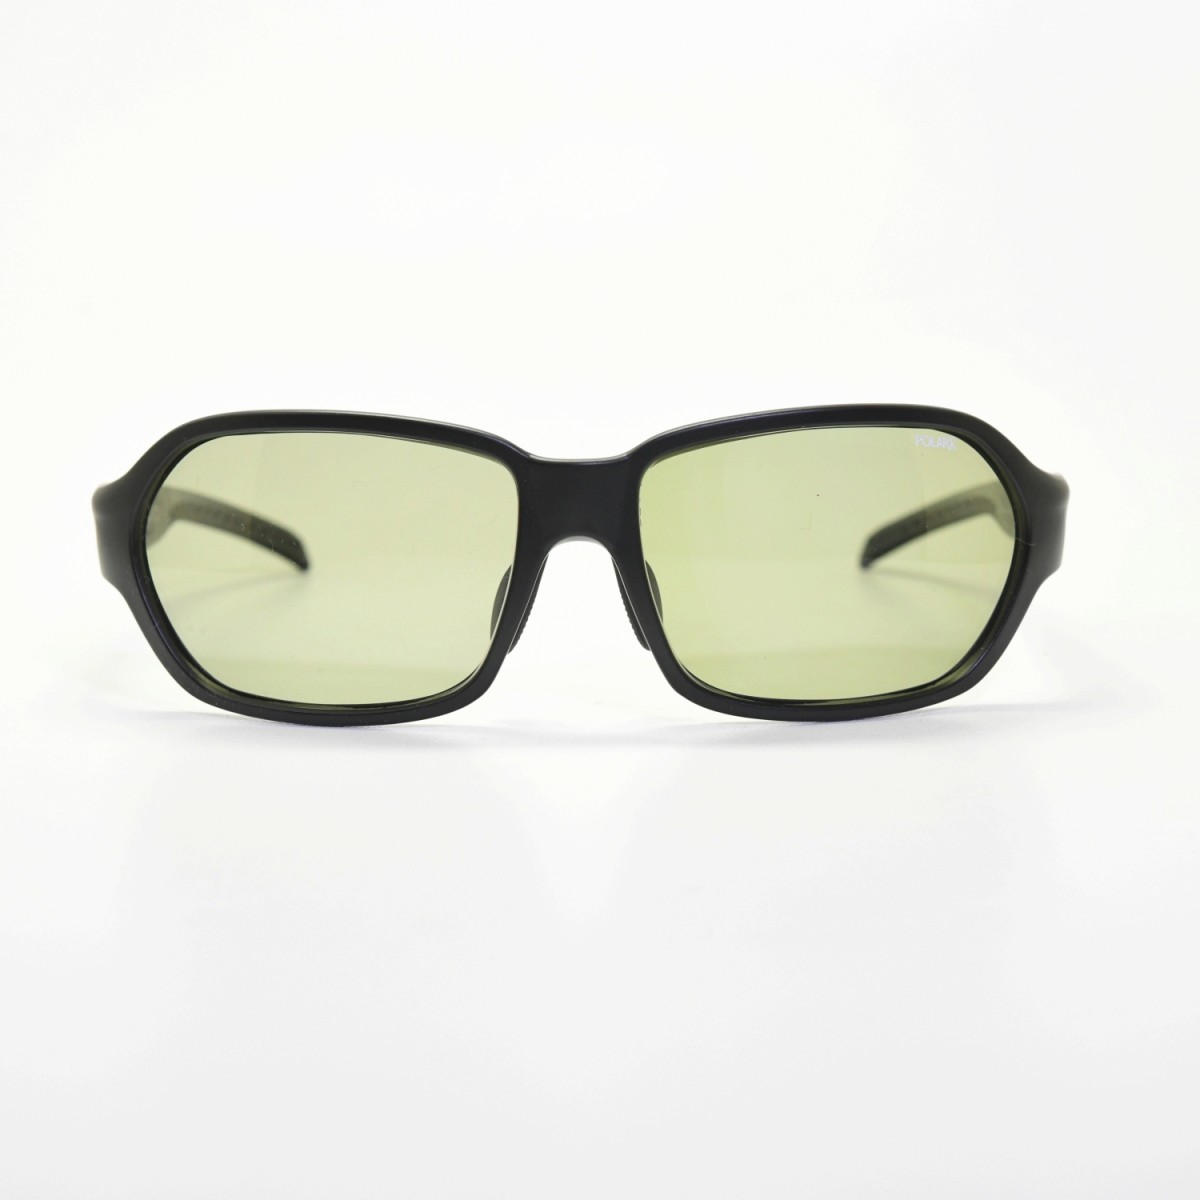 Smith スミス Aura オーラ Black X Light Green37 メガネ 眼鏡 めがね メンズ レディース おしゃれ ブランド 人気 おすすめ フレーム 流行り 度付き レンズ サングラス スポーツ 偏光